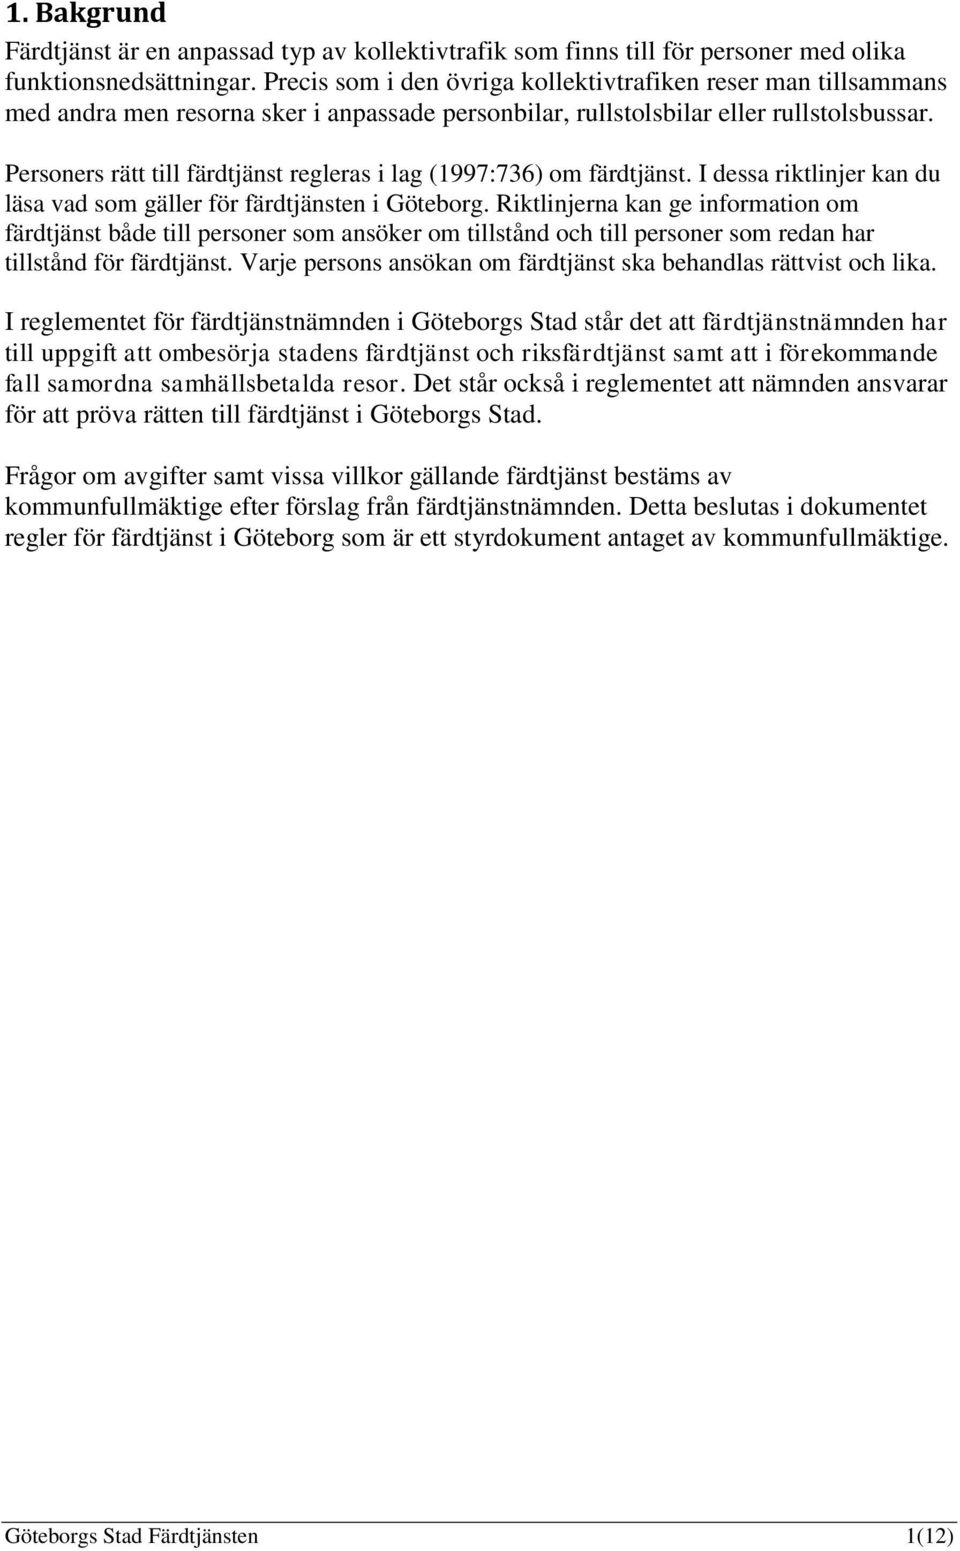 Personers rätt till färdtjänst regleras i lag (1997:736) om färdtjänst. I dessa riktlinjer kan du läsa vad som gäller för färdtjänsten i Göteborg.